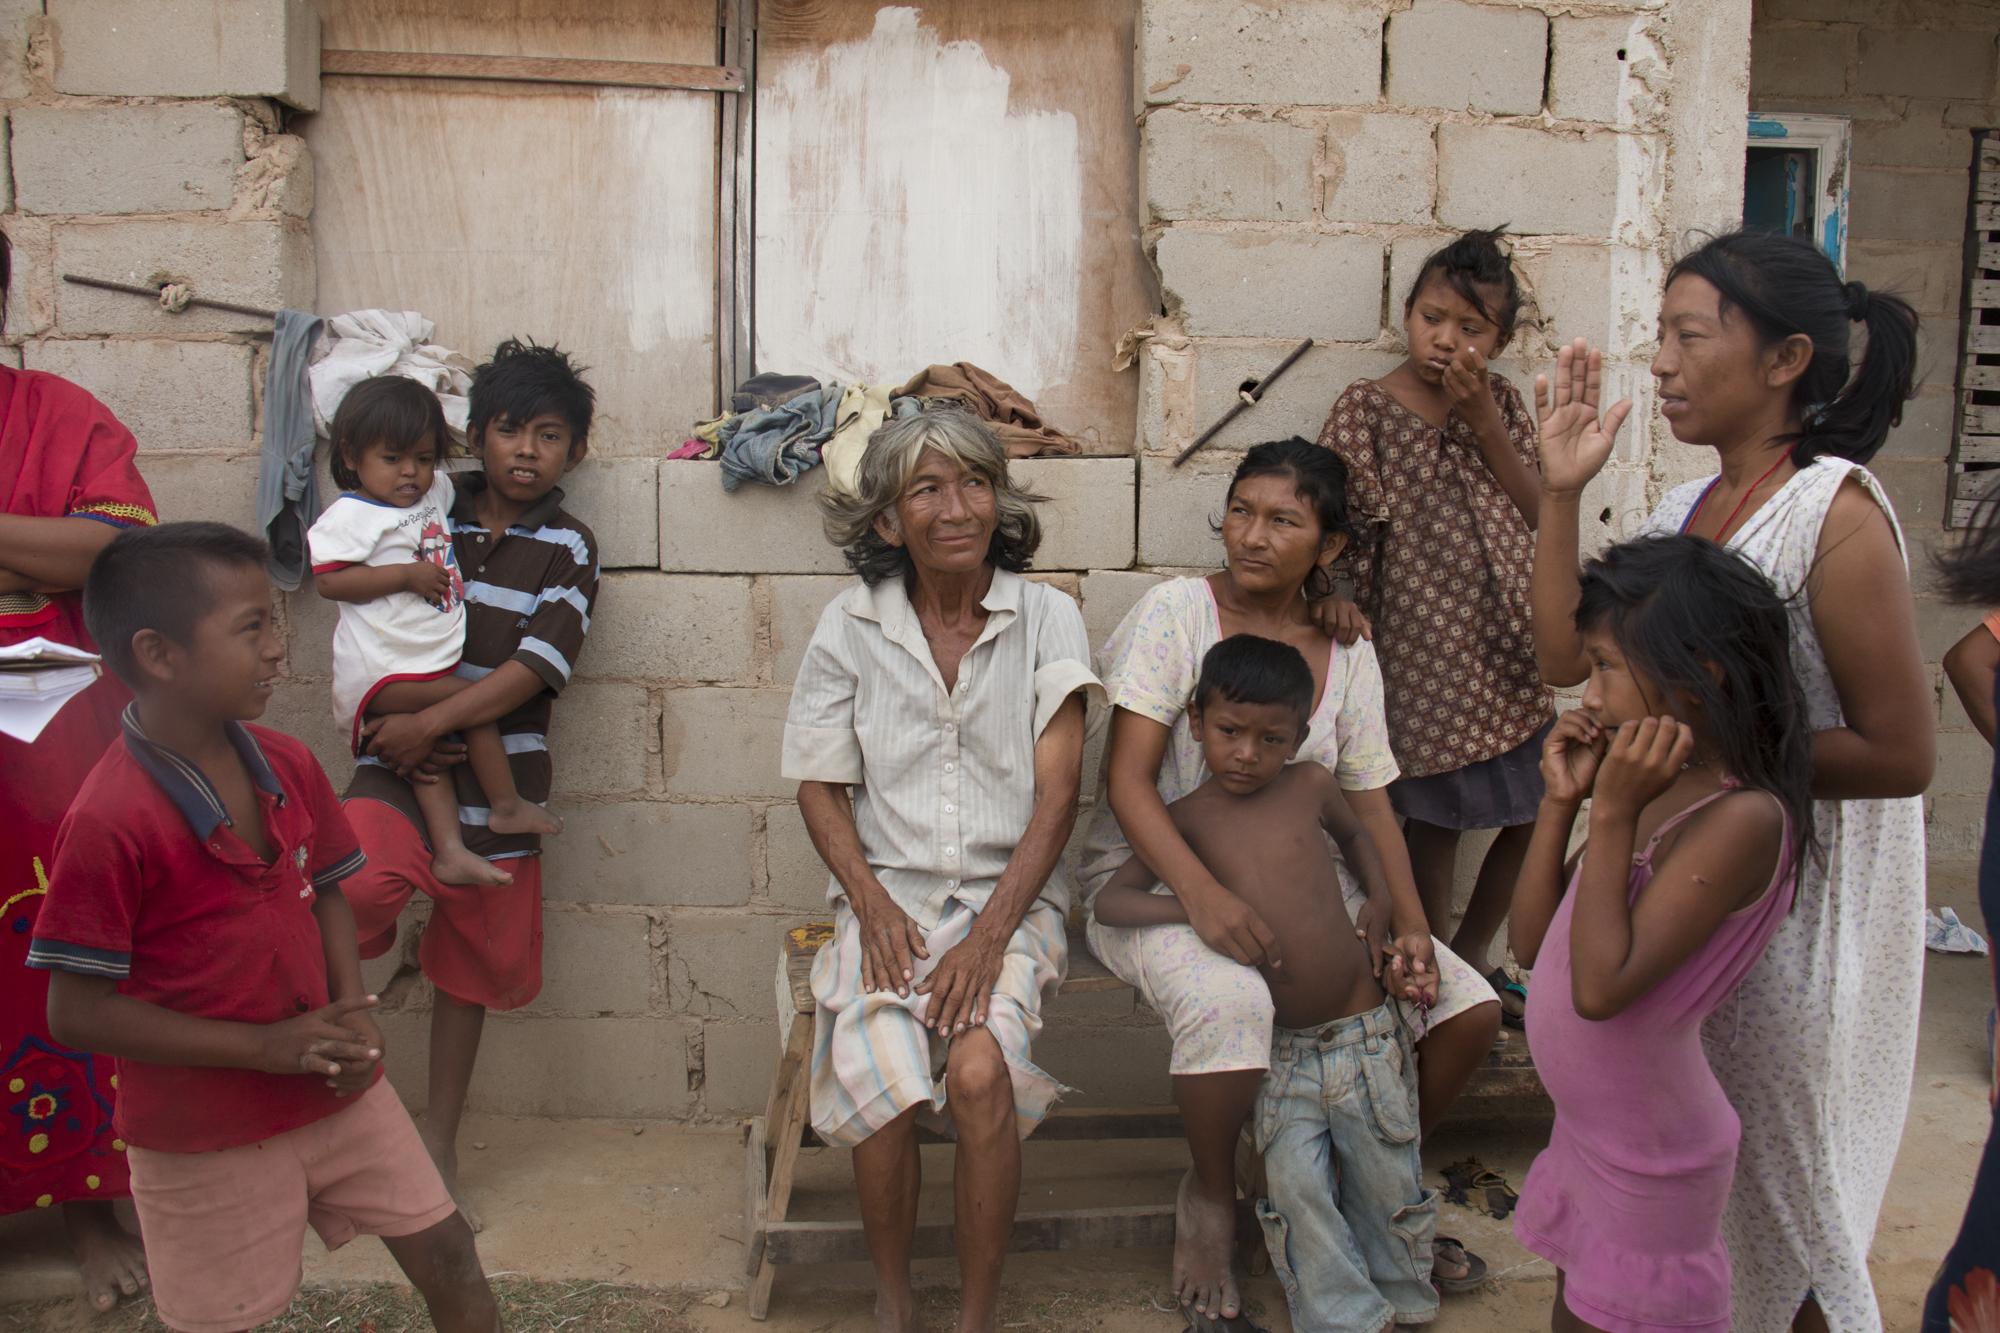 Las caras ocultas del hambre en La Guajira venezolana